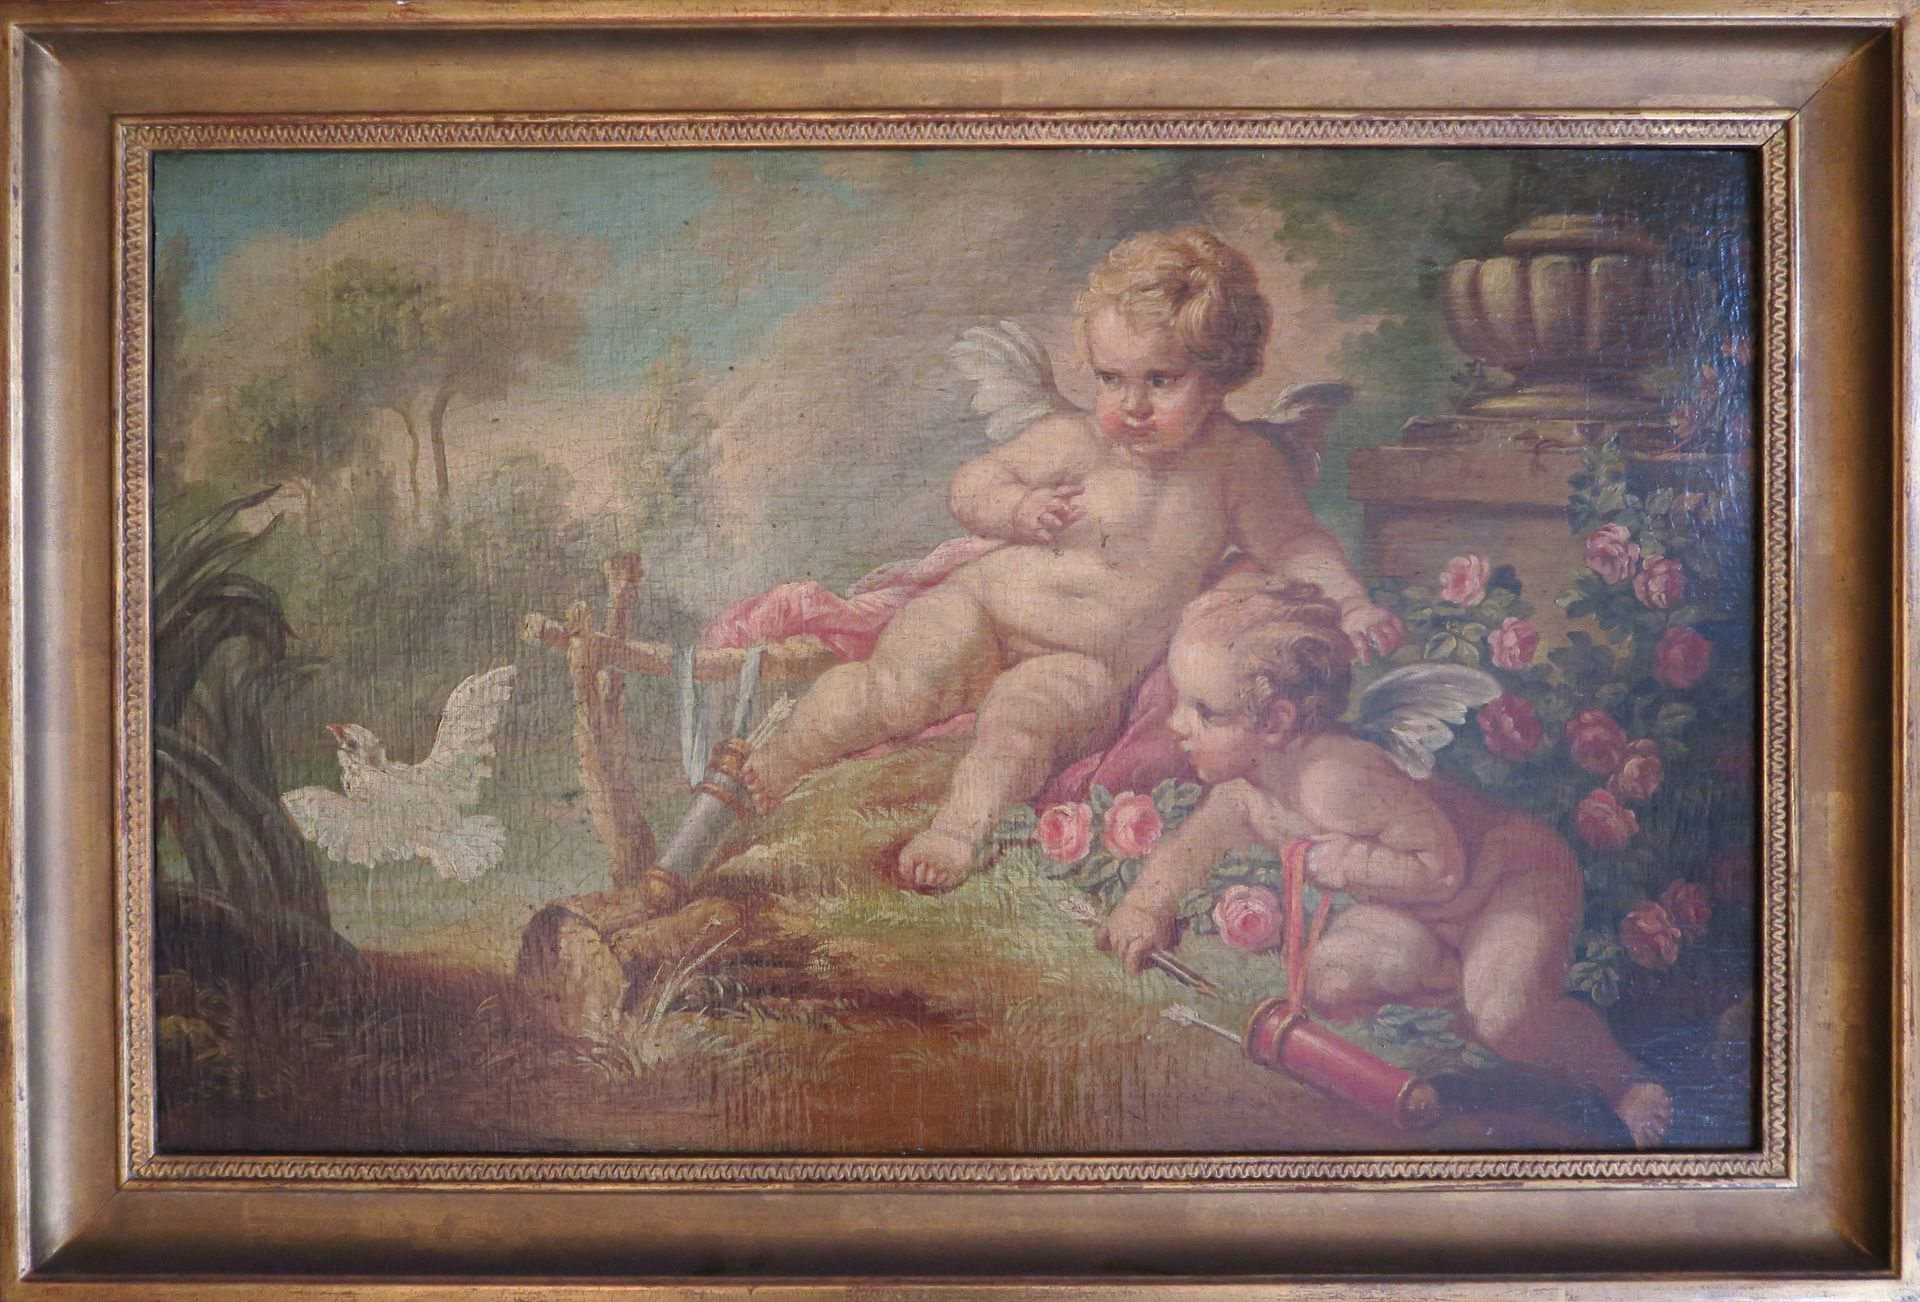 Null 在弗朗索瓦-布歇（1703-1770）的品味中

恋人玩耍

布面油画，装在面板上

43,5 x 69 cm 正在观看